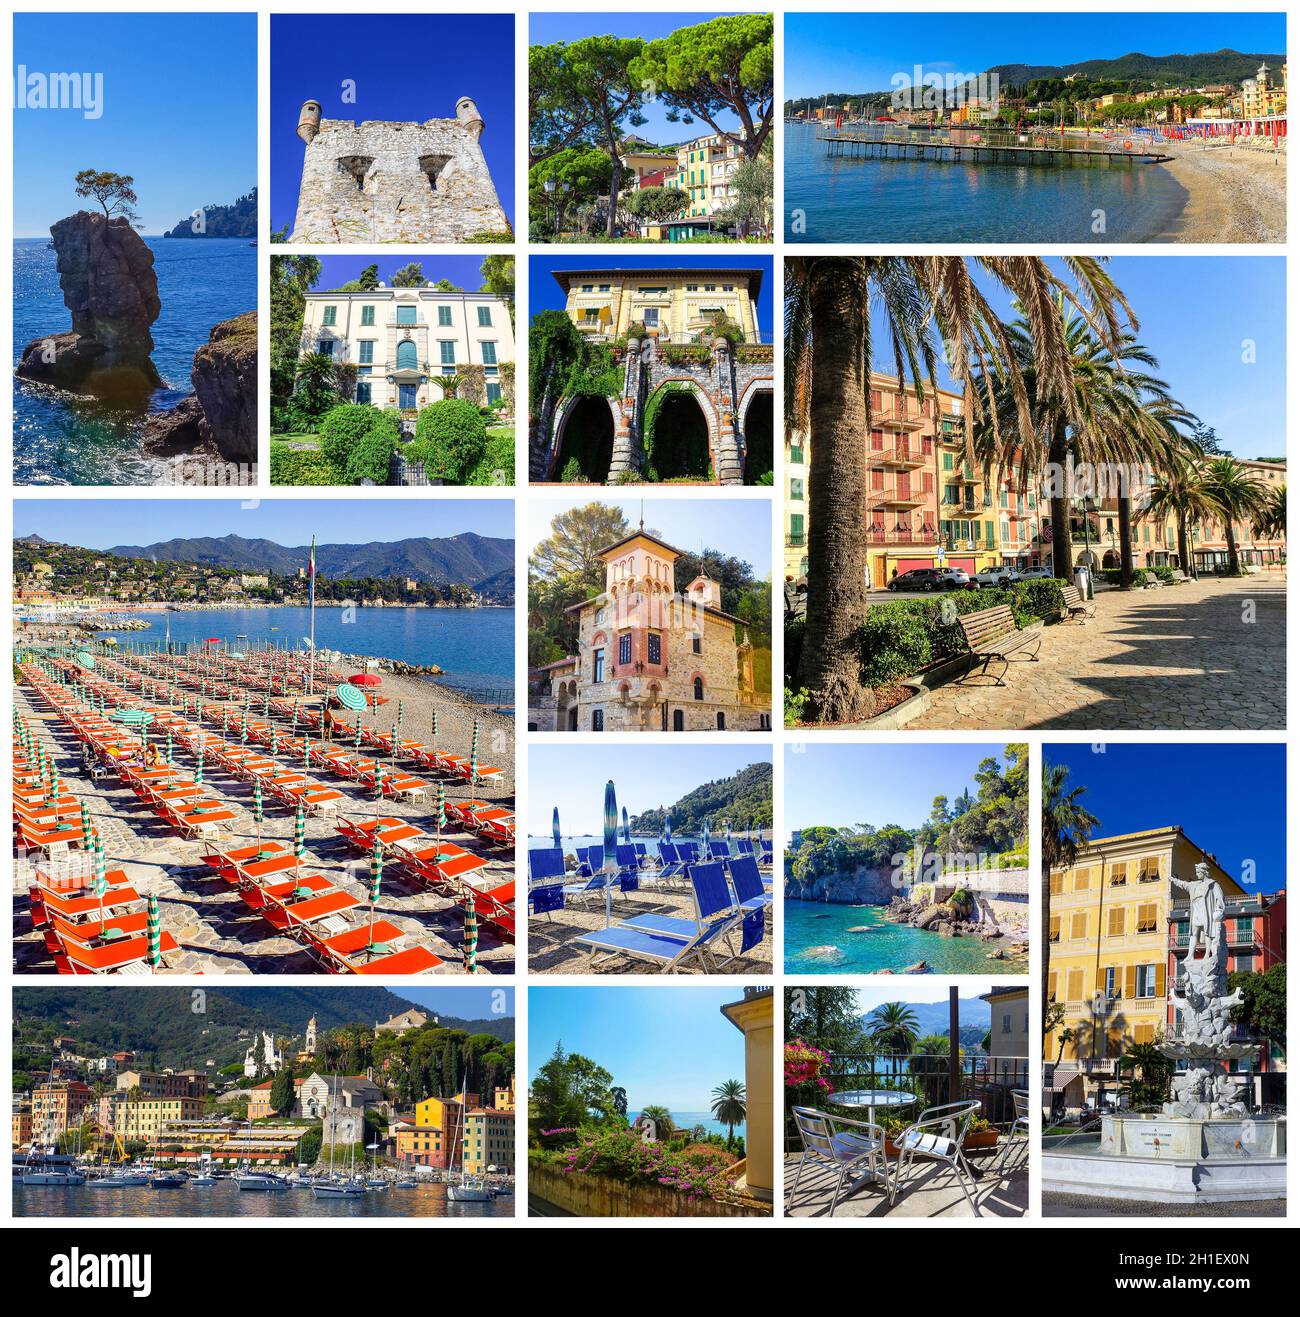 Collage sur l'architecture de Santa Margherita Ligure - destination touristique populaire en été en Italie Banque D'Images